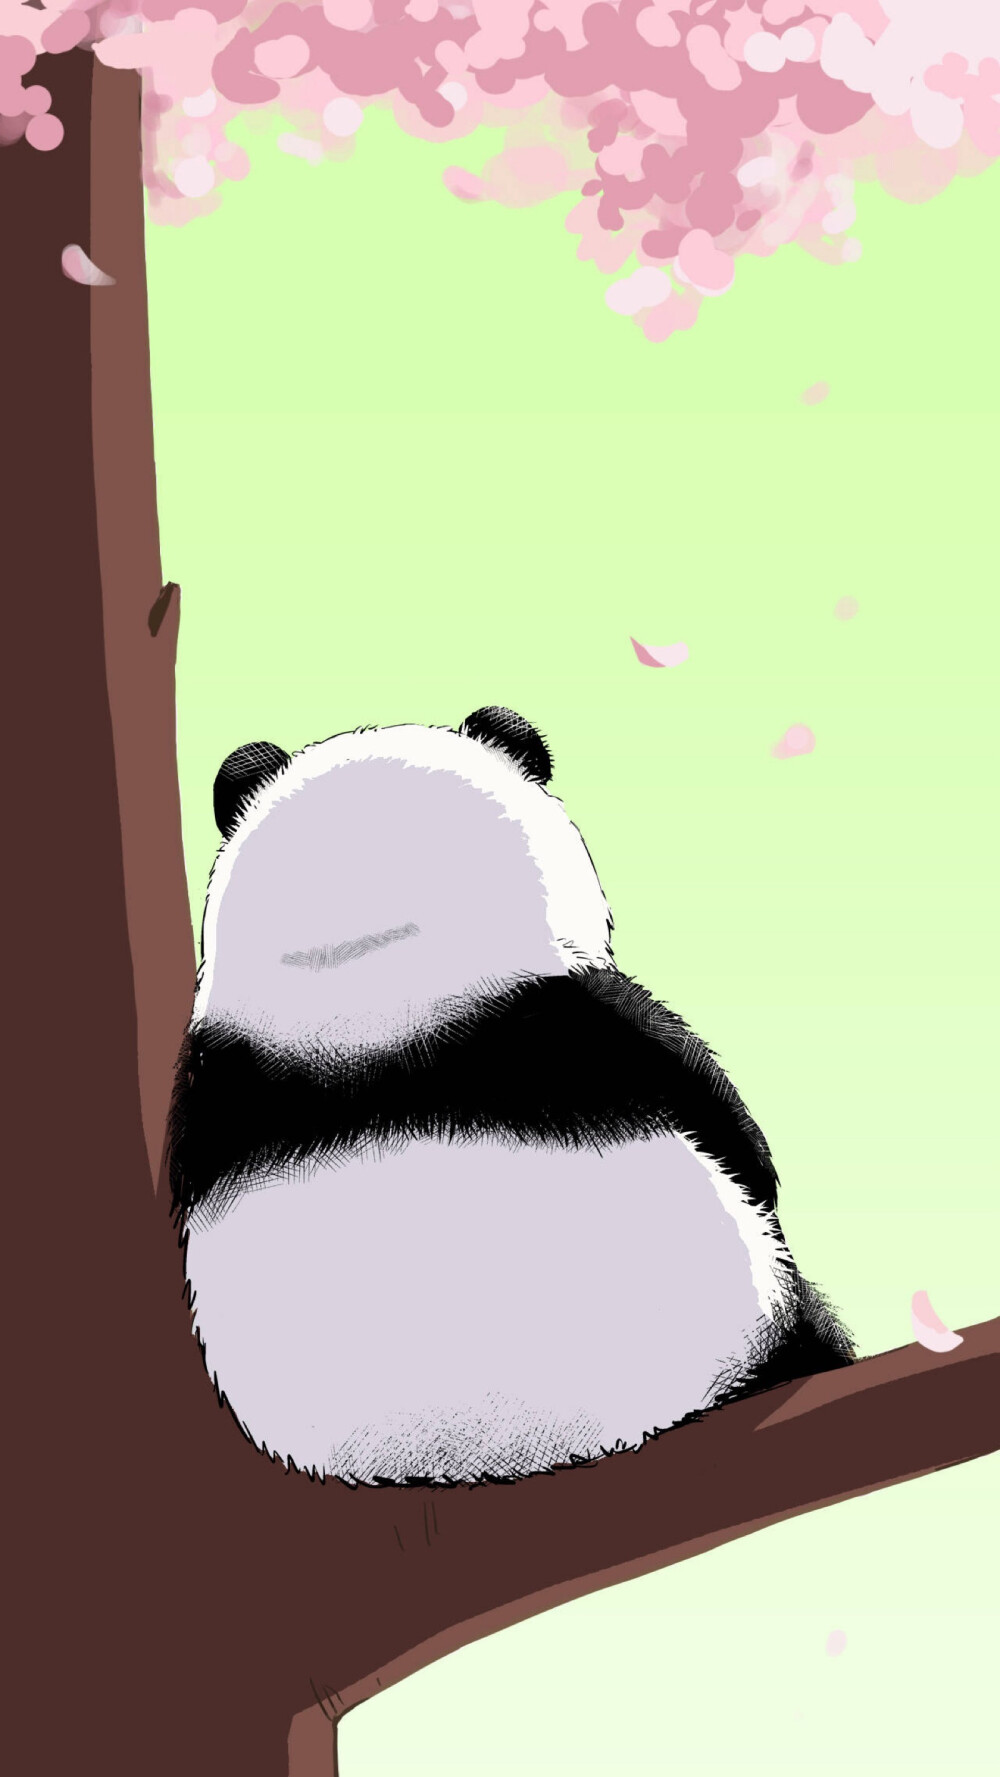 熊猫沙雕图片 壁纸图片